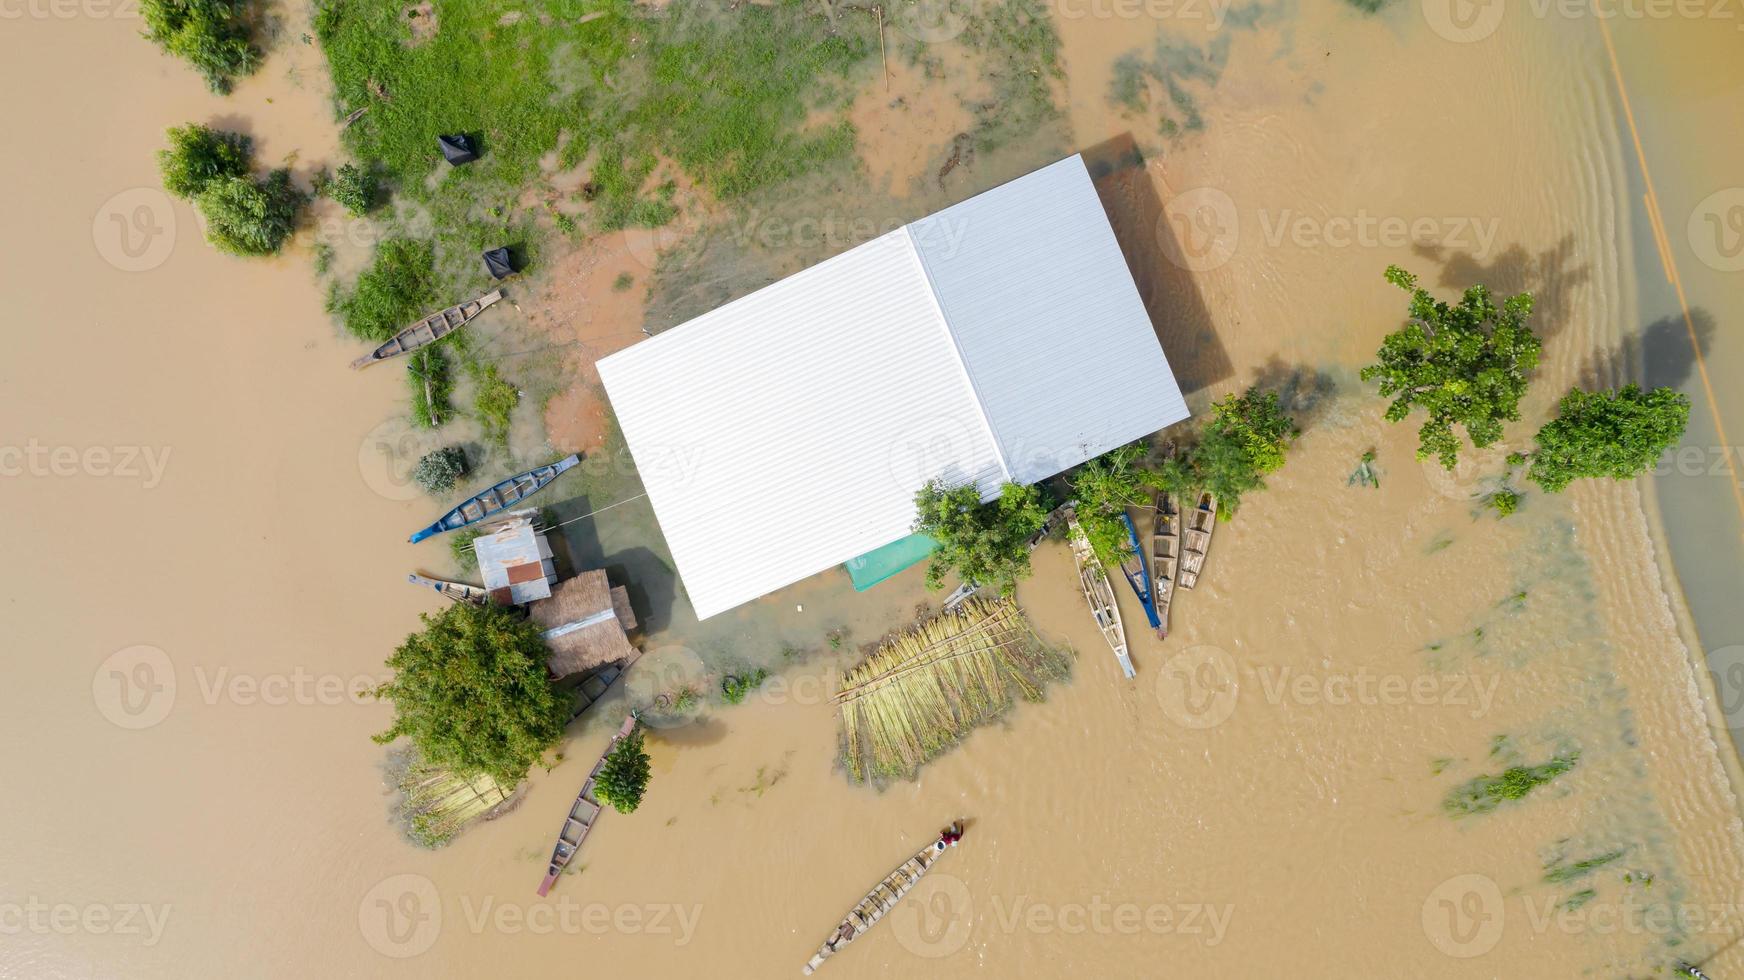 vista aérea superior de arrozais inundados e da aldeia foto